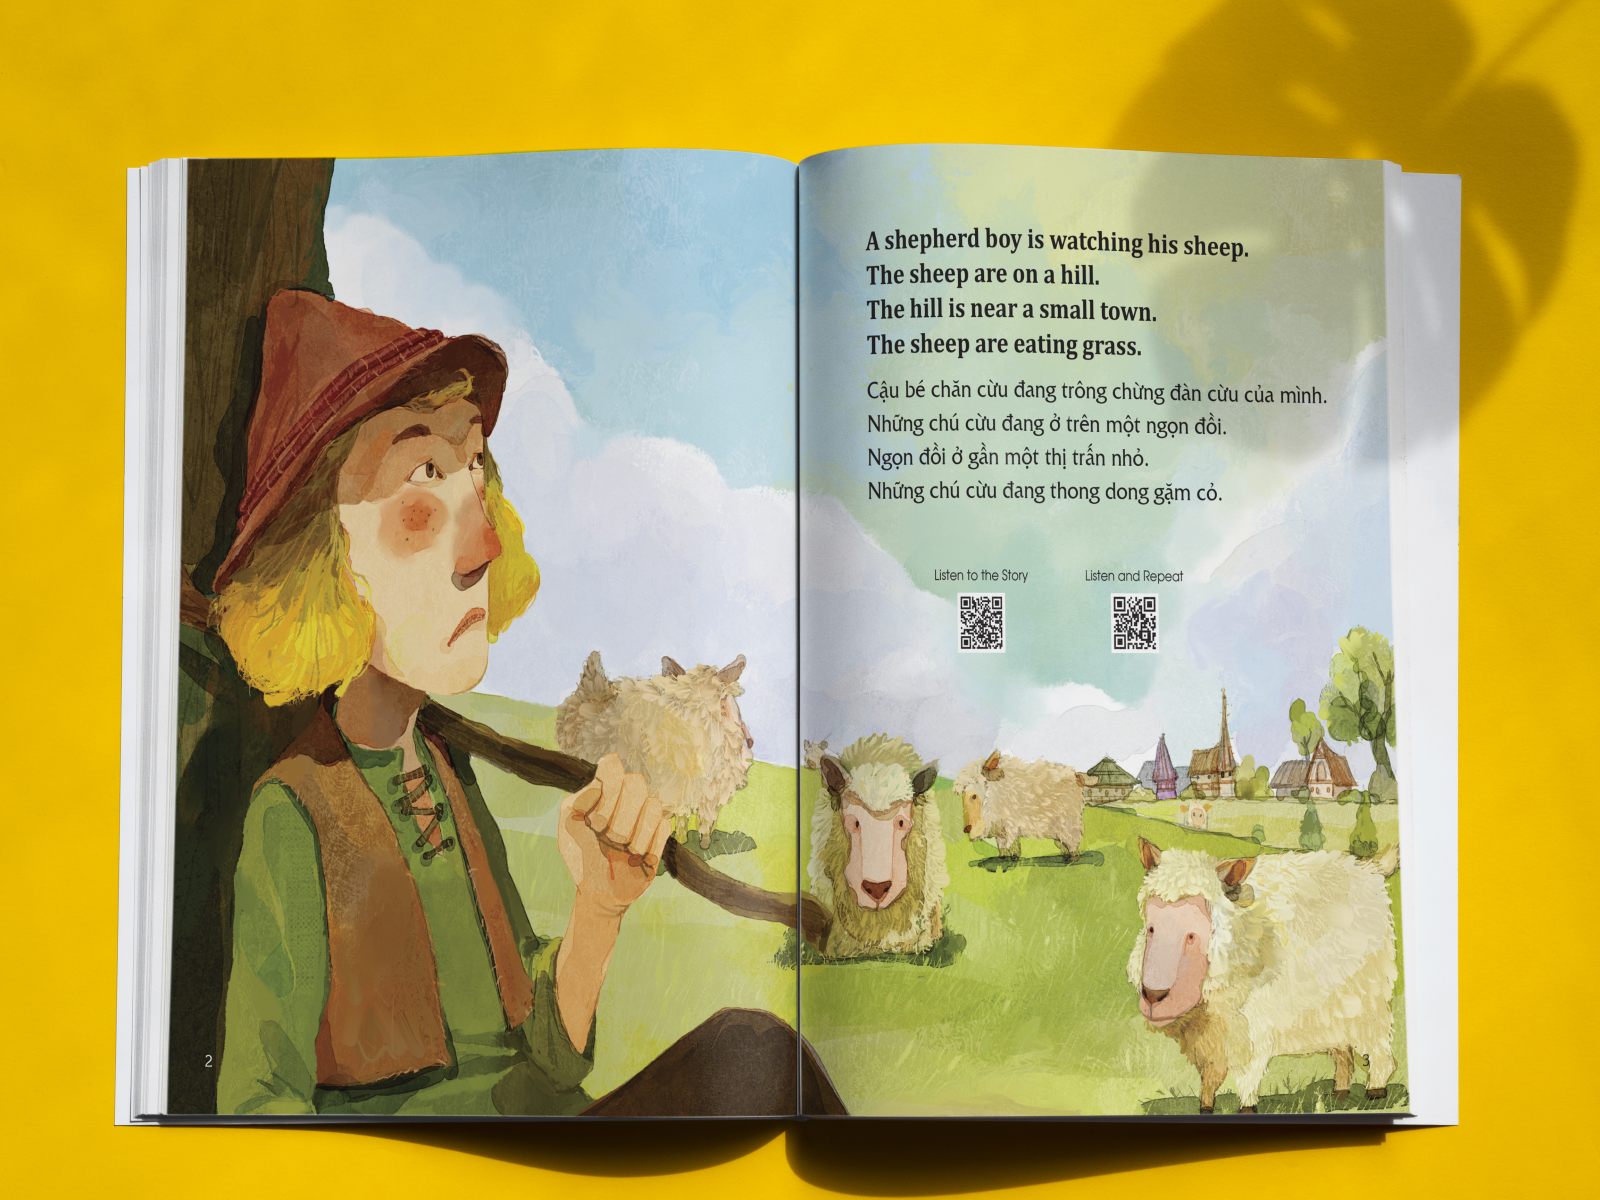 Học tiếng Anh cùng truyện ngụ ngôn Aesop - Cậu bé chăn cừu và con sói - The Shepherd Boy and the Wolf